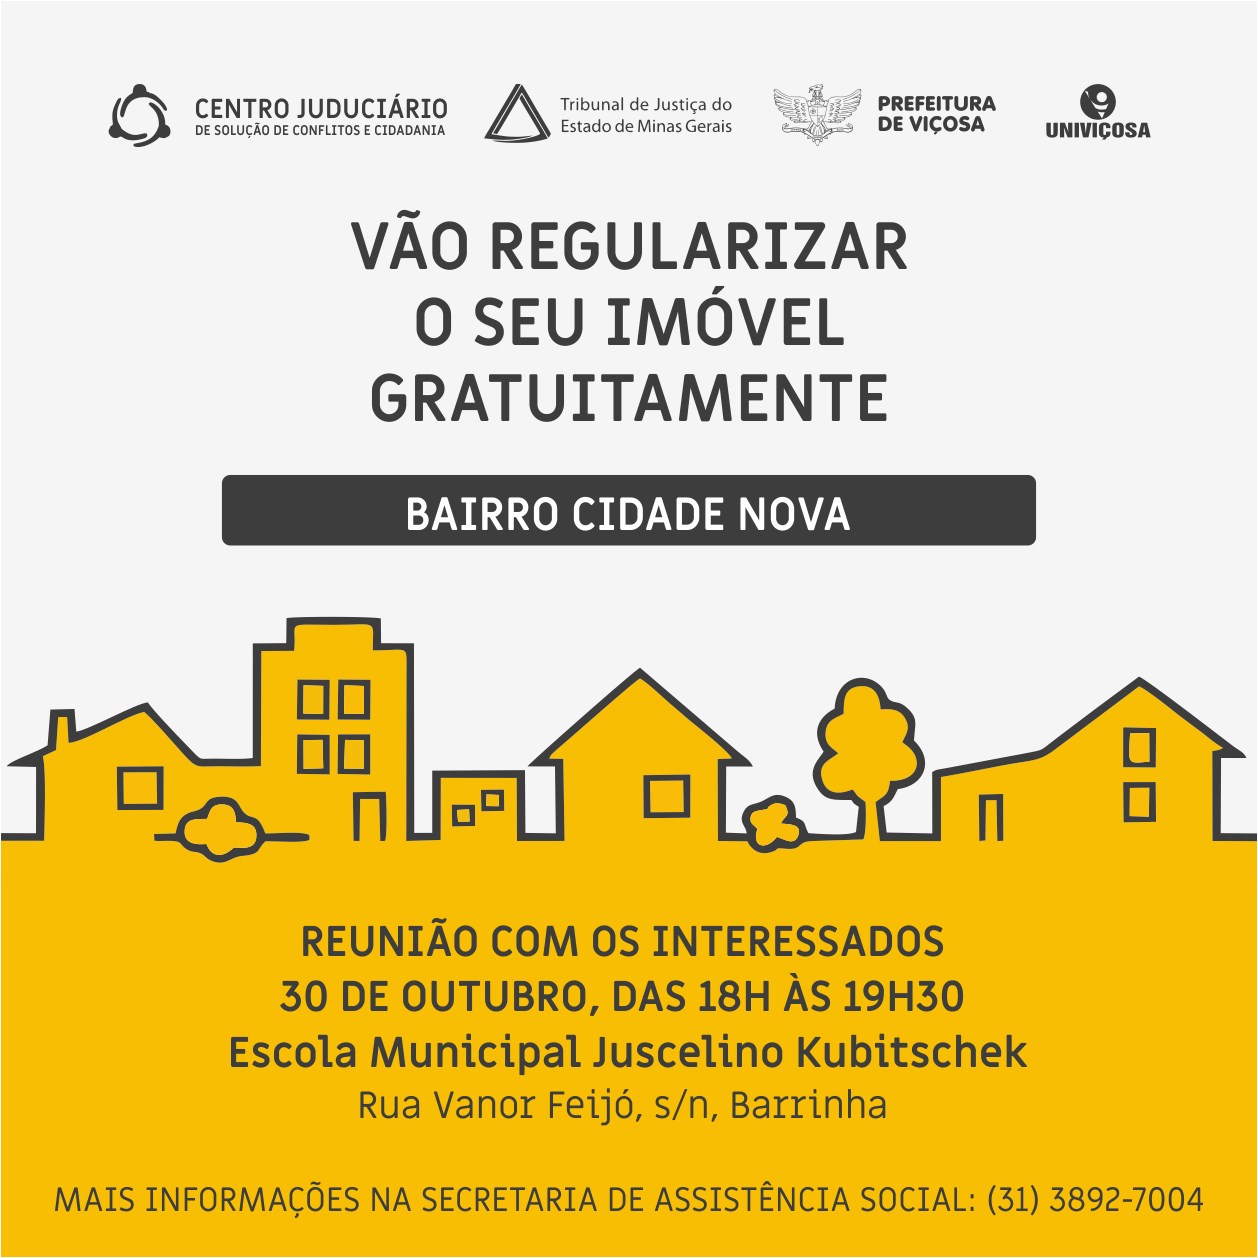 Moradores do bairro Cidade Nova poderão regularizar seus imóveis gratuitamente